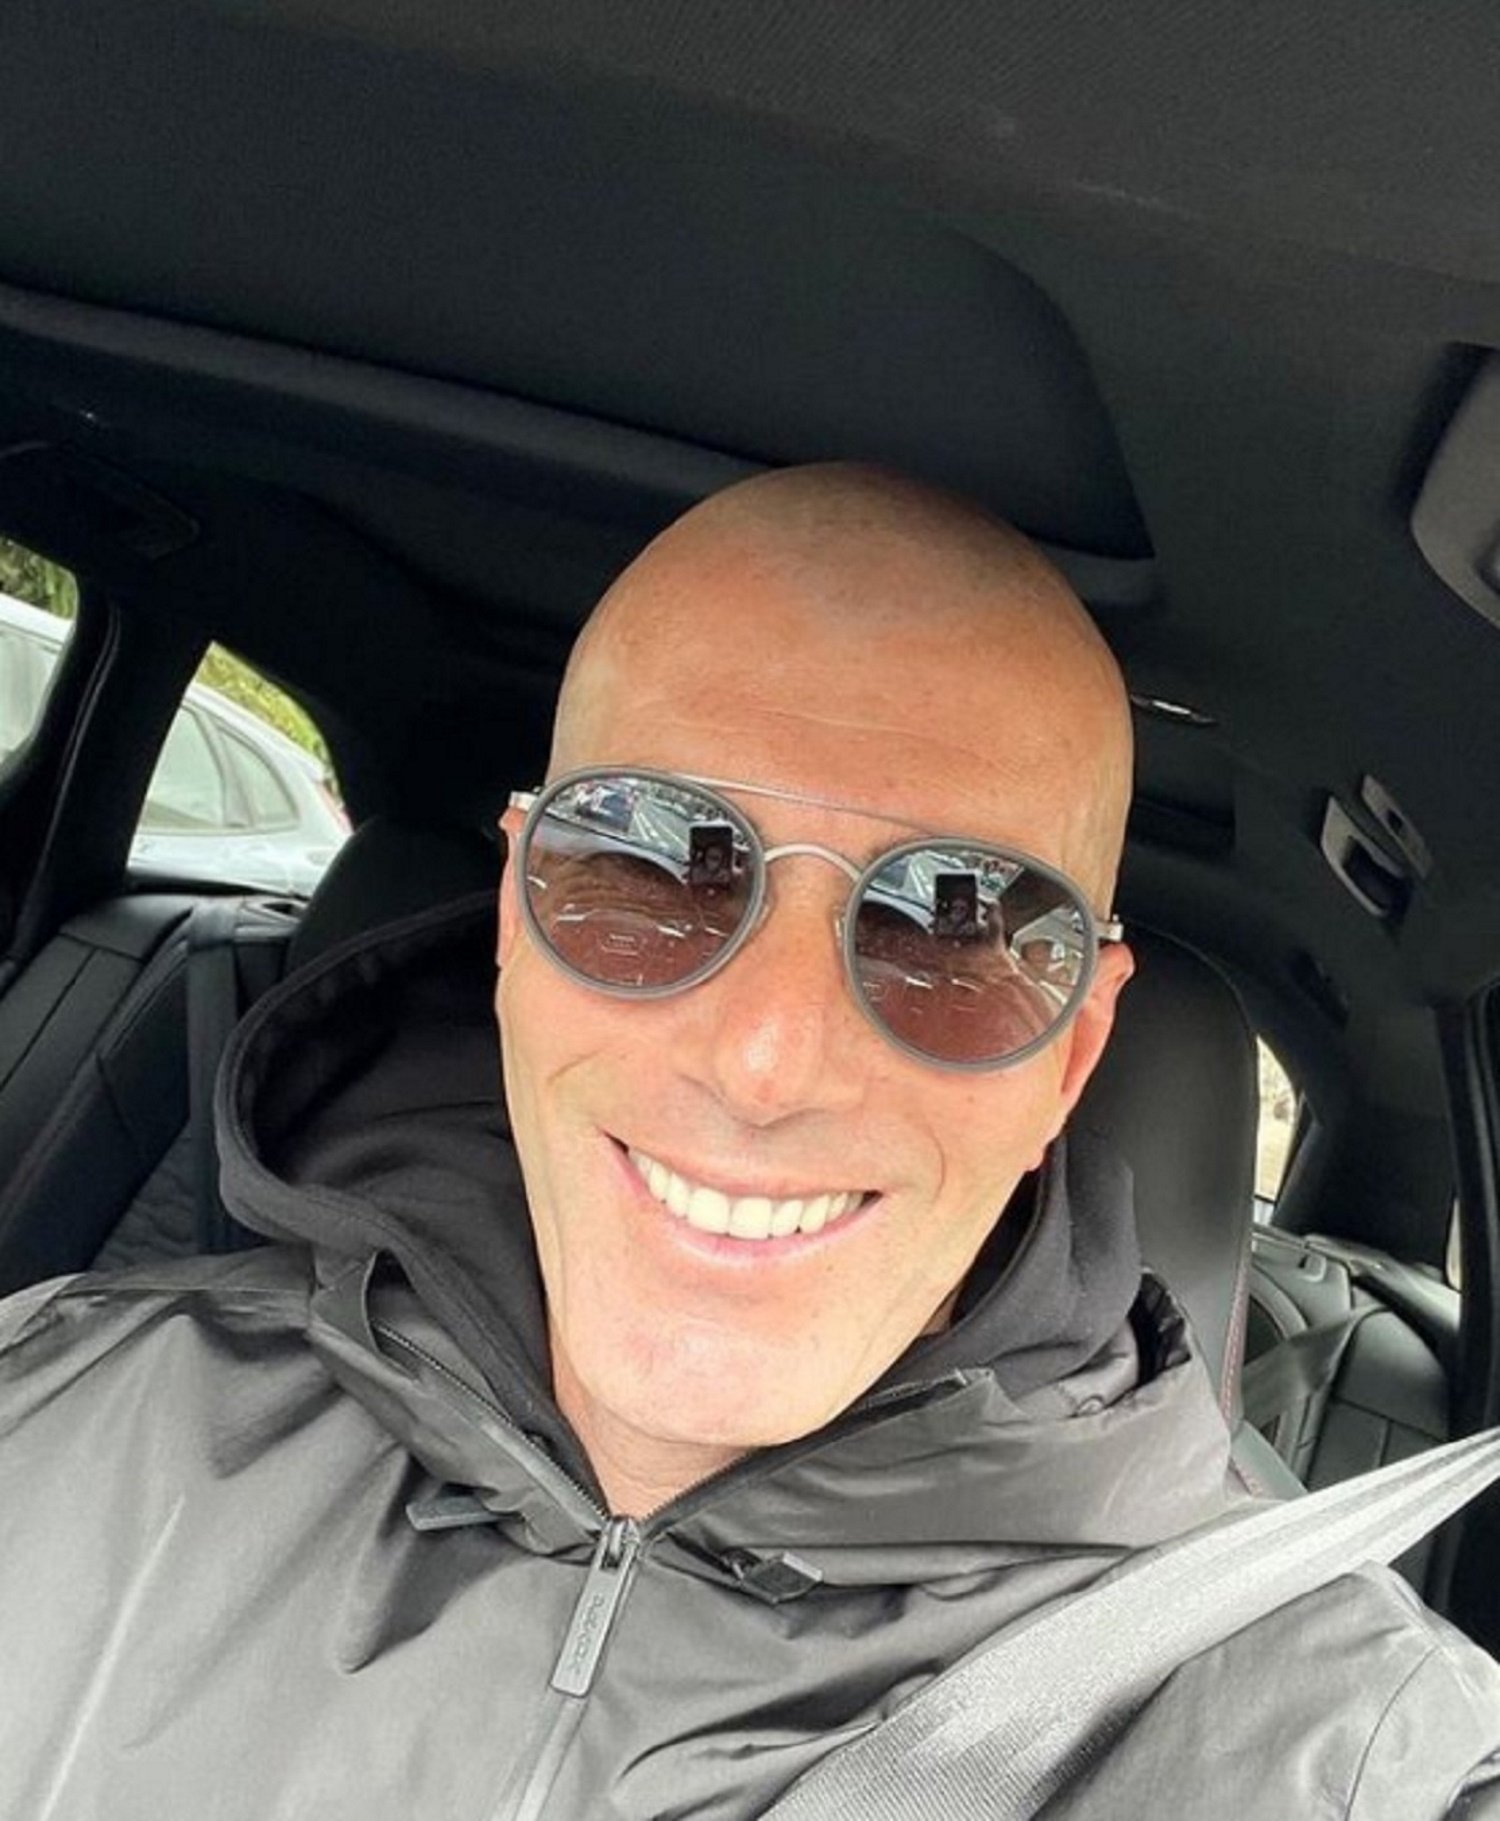 La misteriosa foto que Zidane cuelga en redes (y después borra)